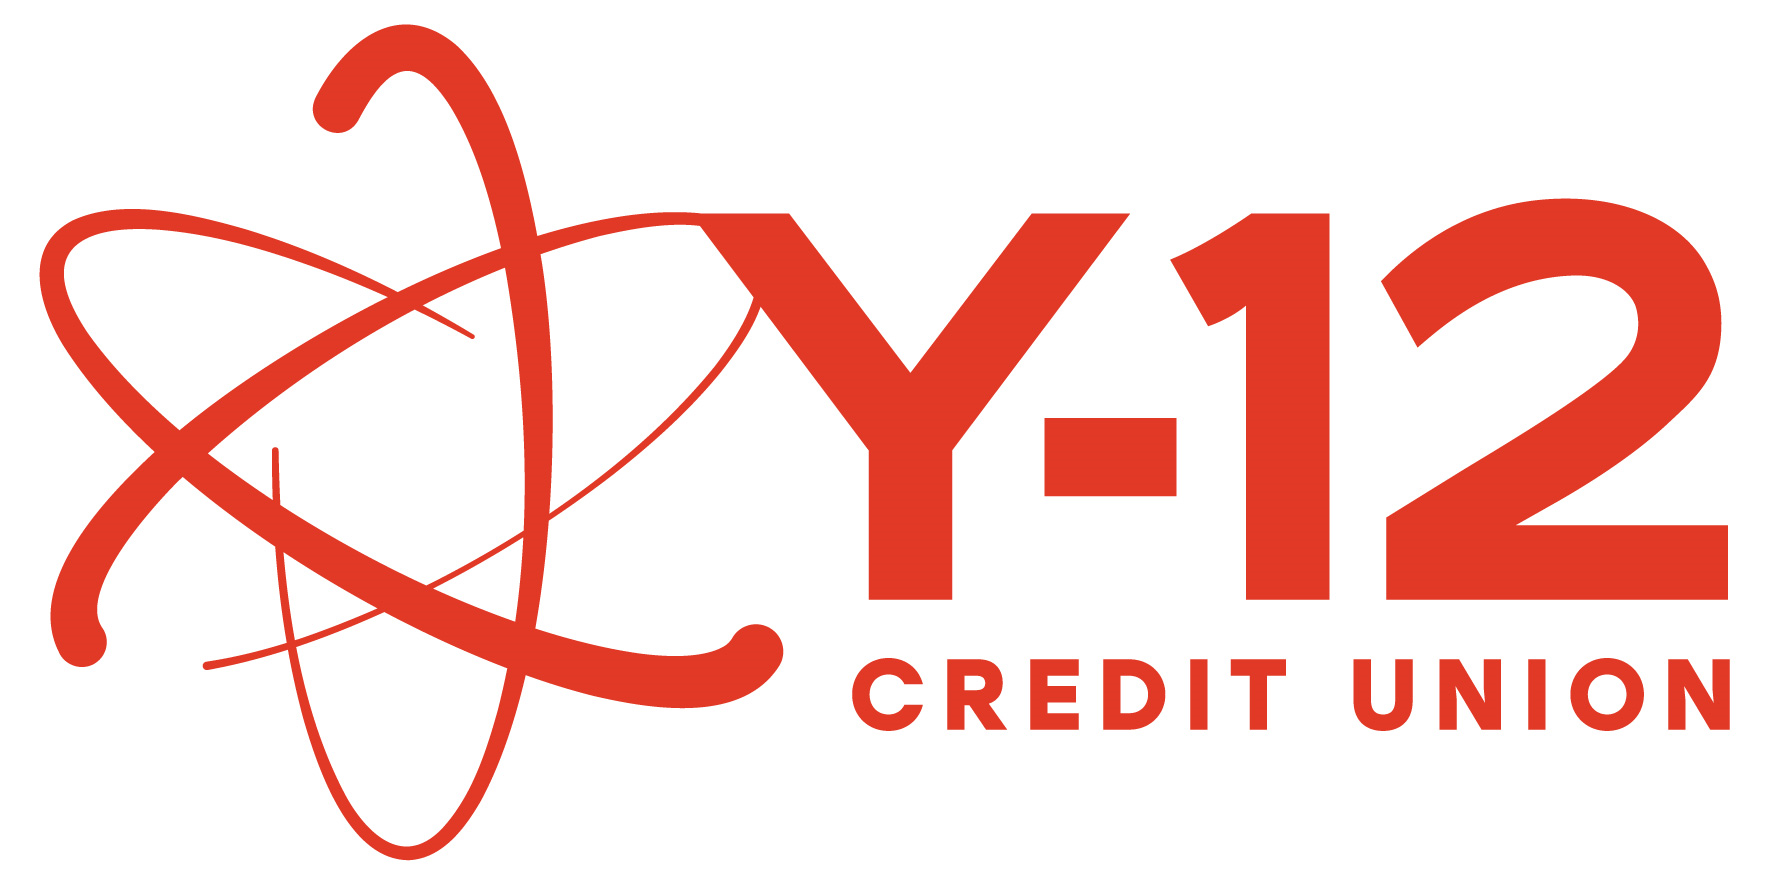 Y-12 Credit Union logo